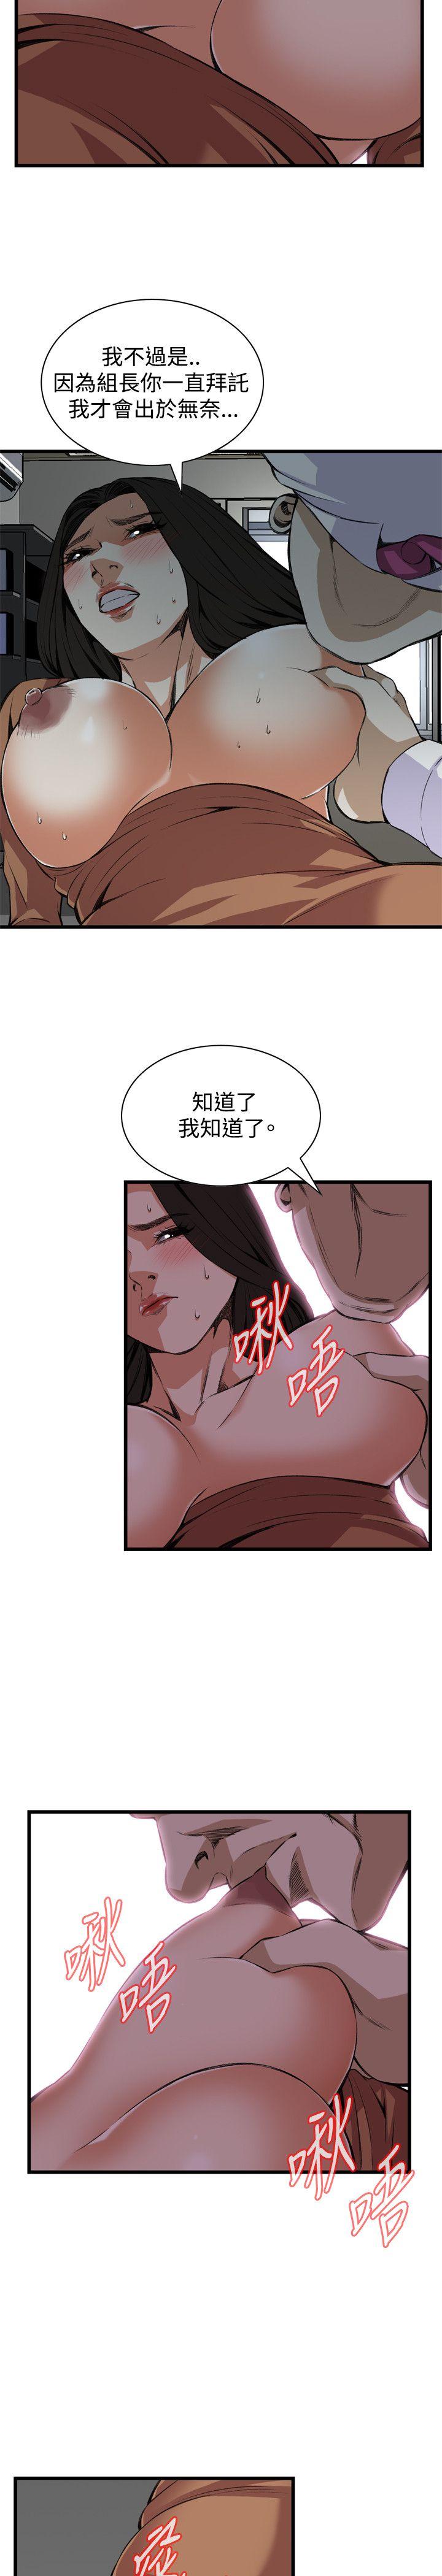 韩国污漫画 偷窺 第83话 19